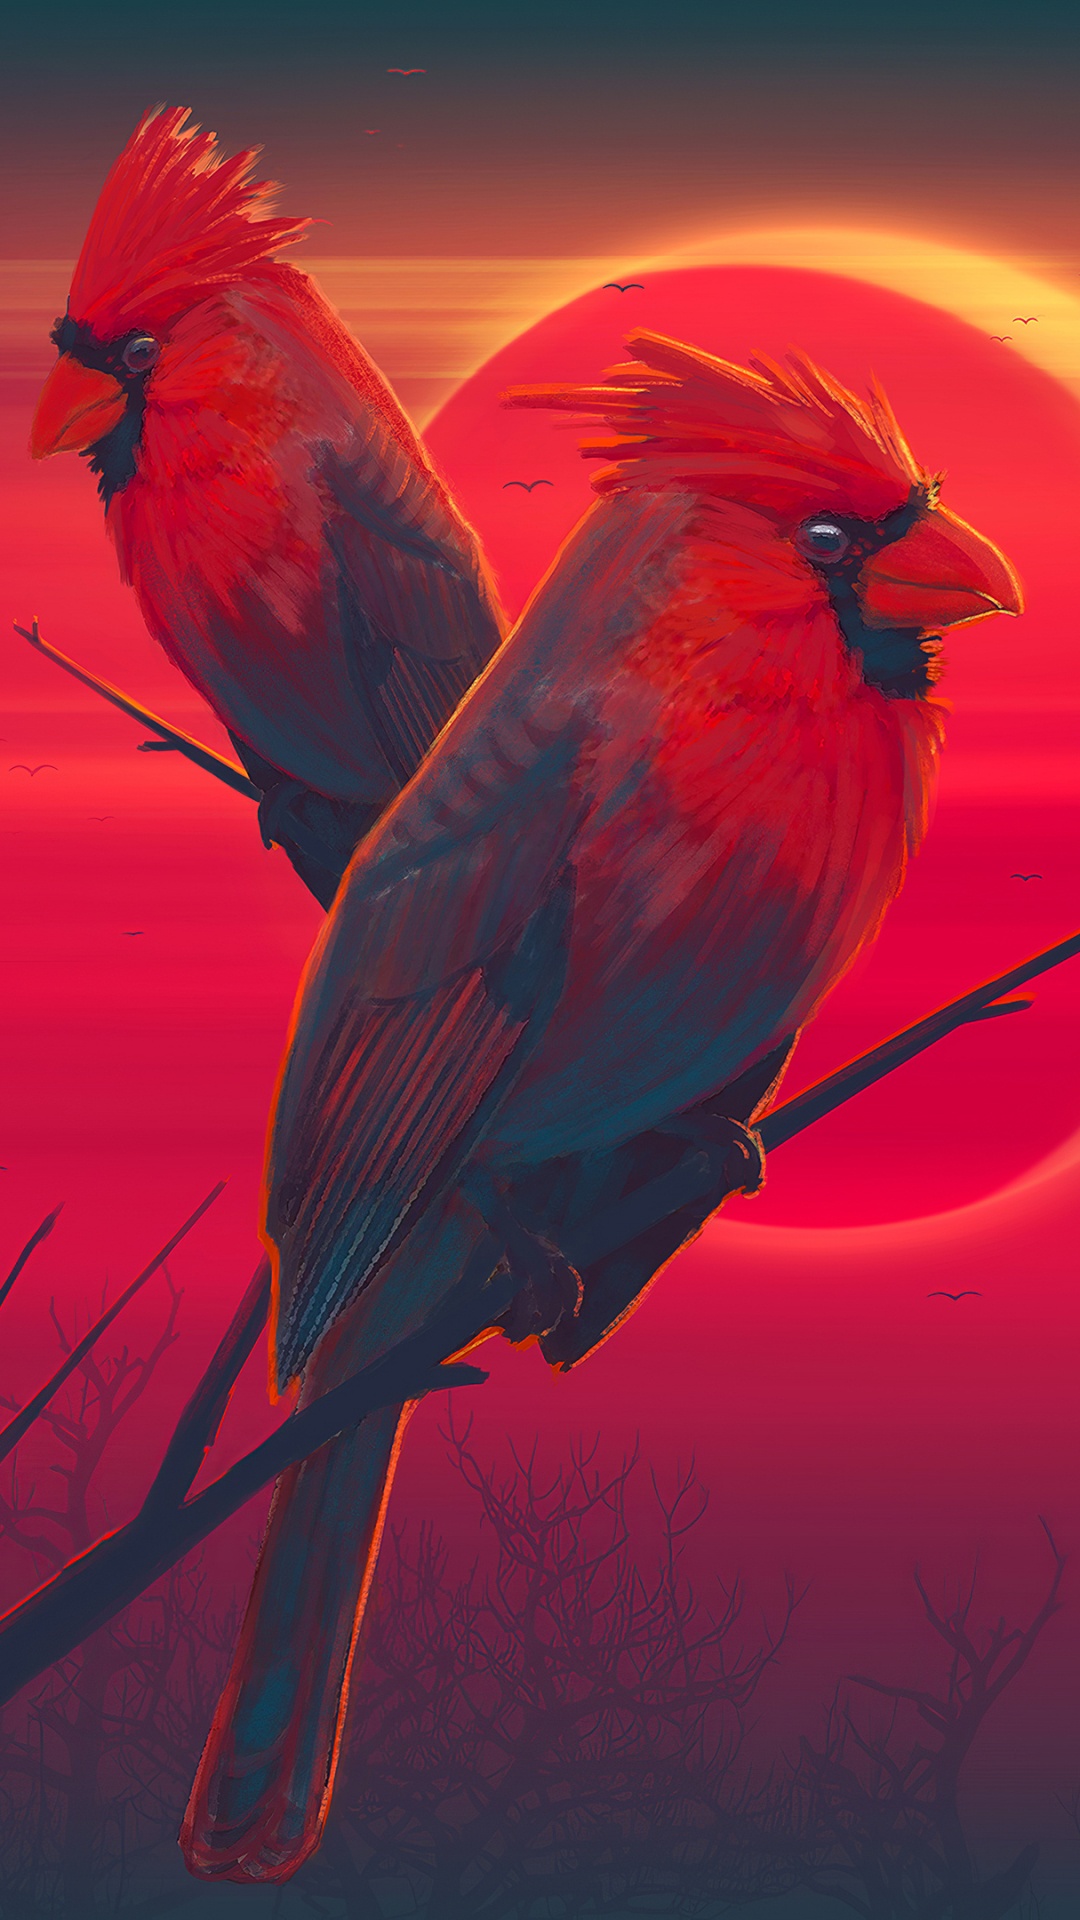 Roter Vogel Auf Braunem Stock. Wallpaper in 1080x1920 Resolution